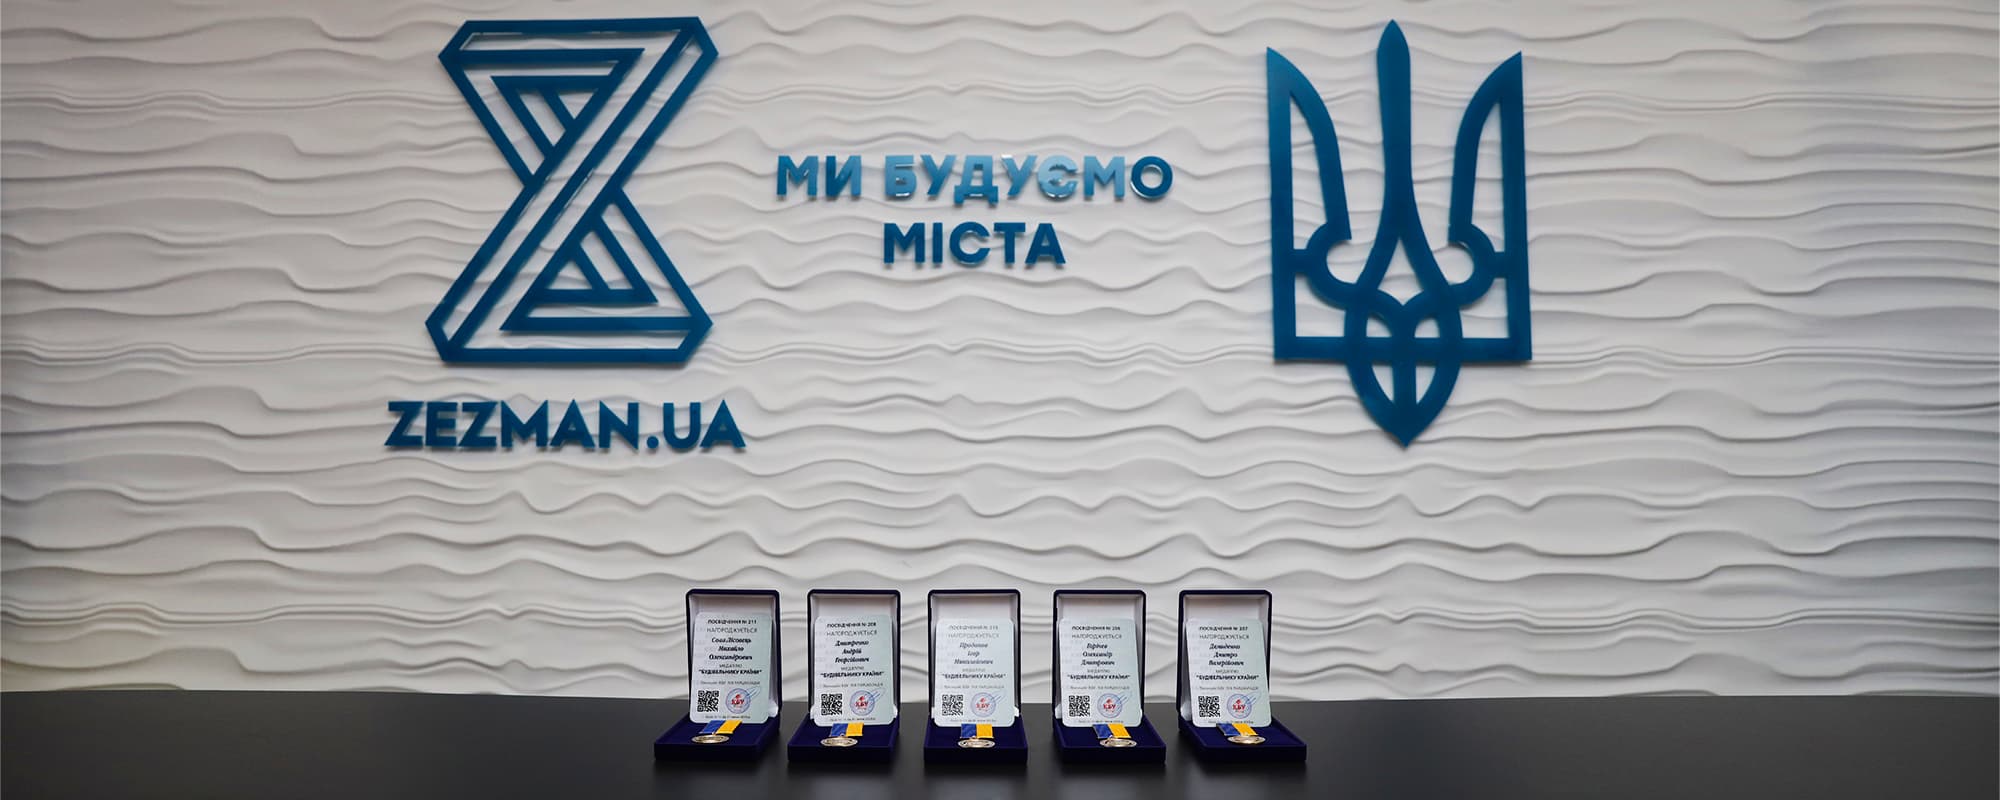 Получили почетные медали от Конфедерации строителей Украины